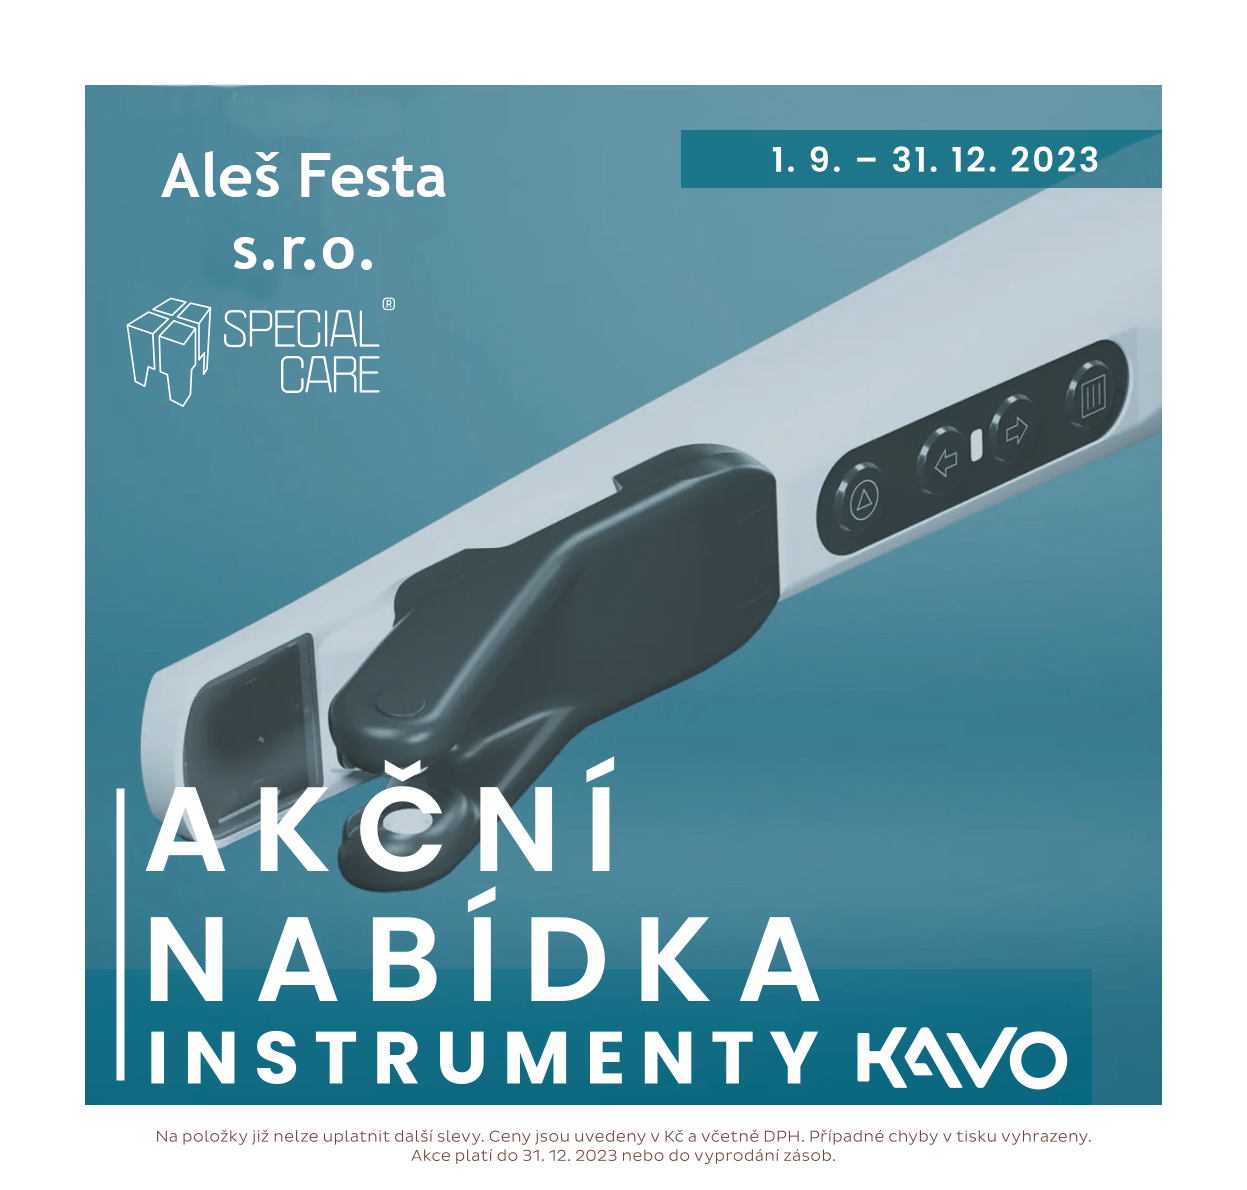 Akční nabídka KaVo instrumenty